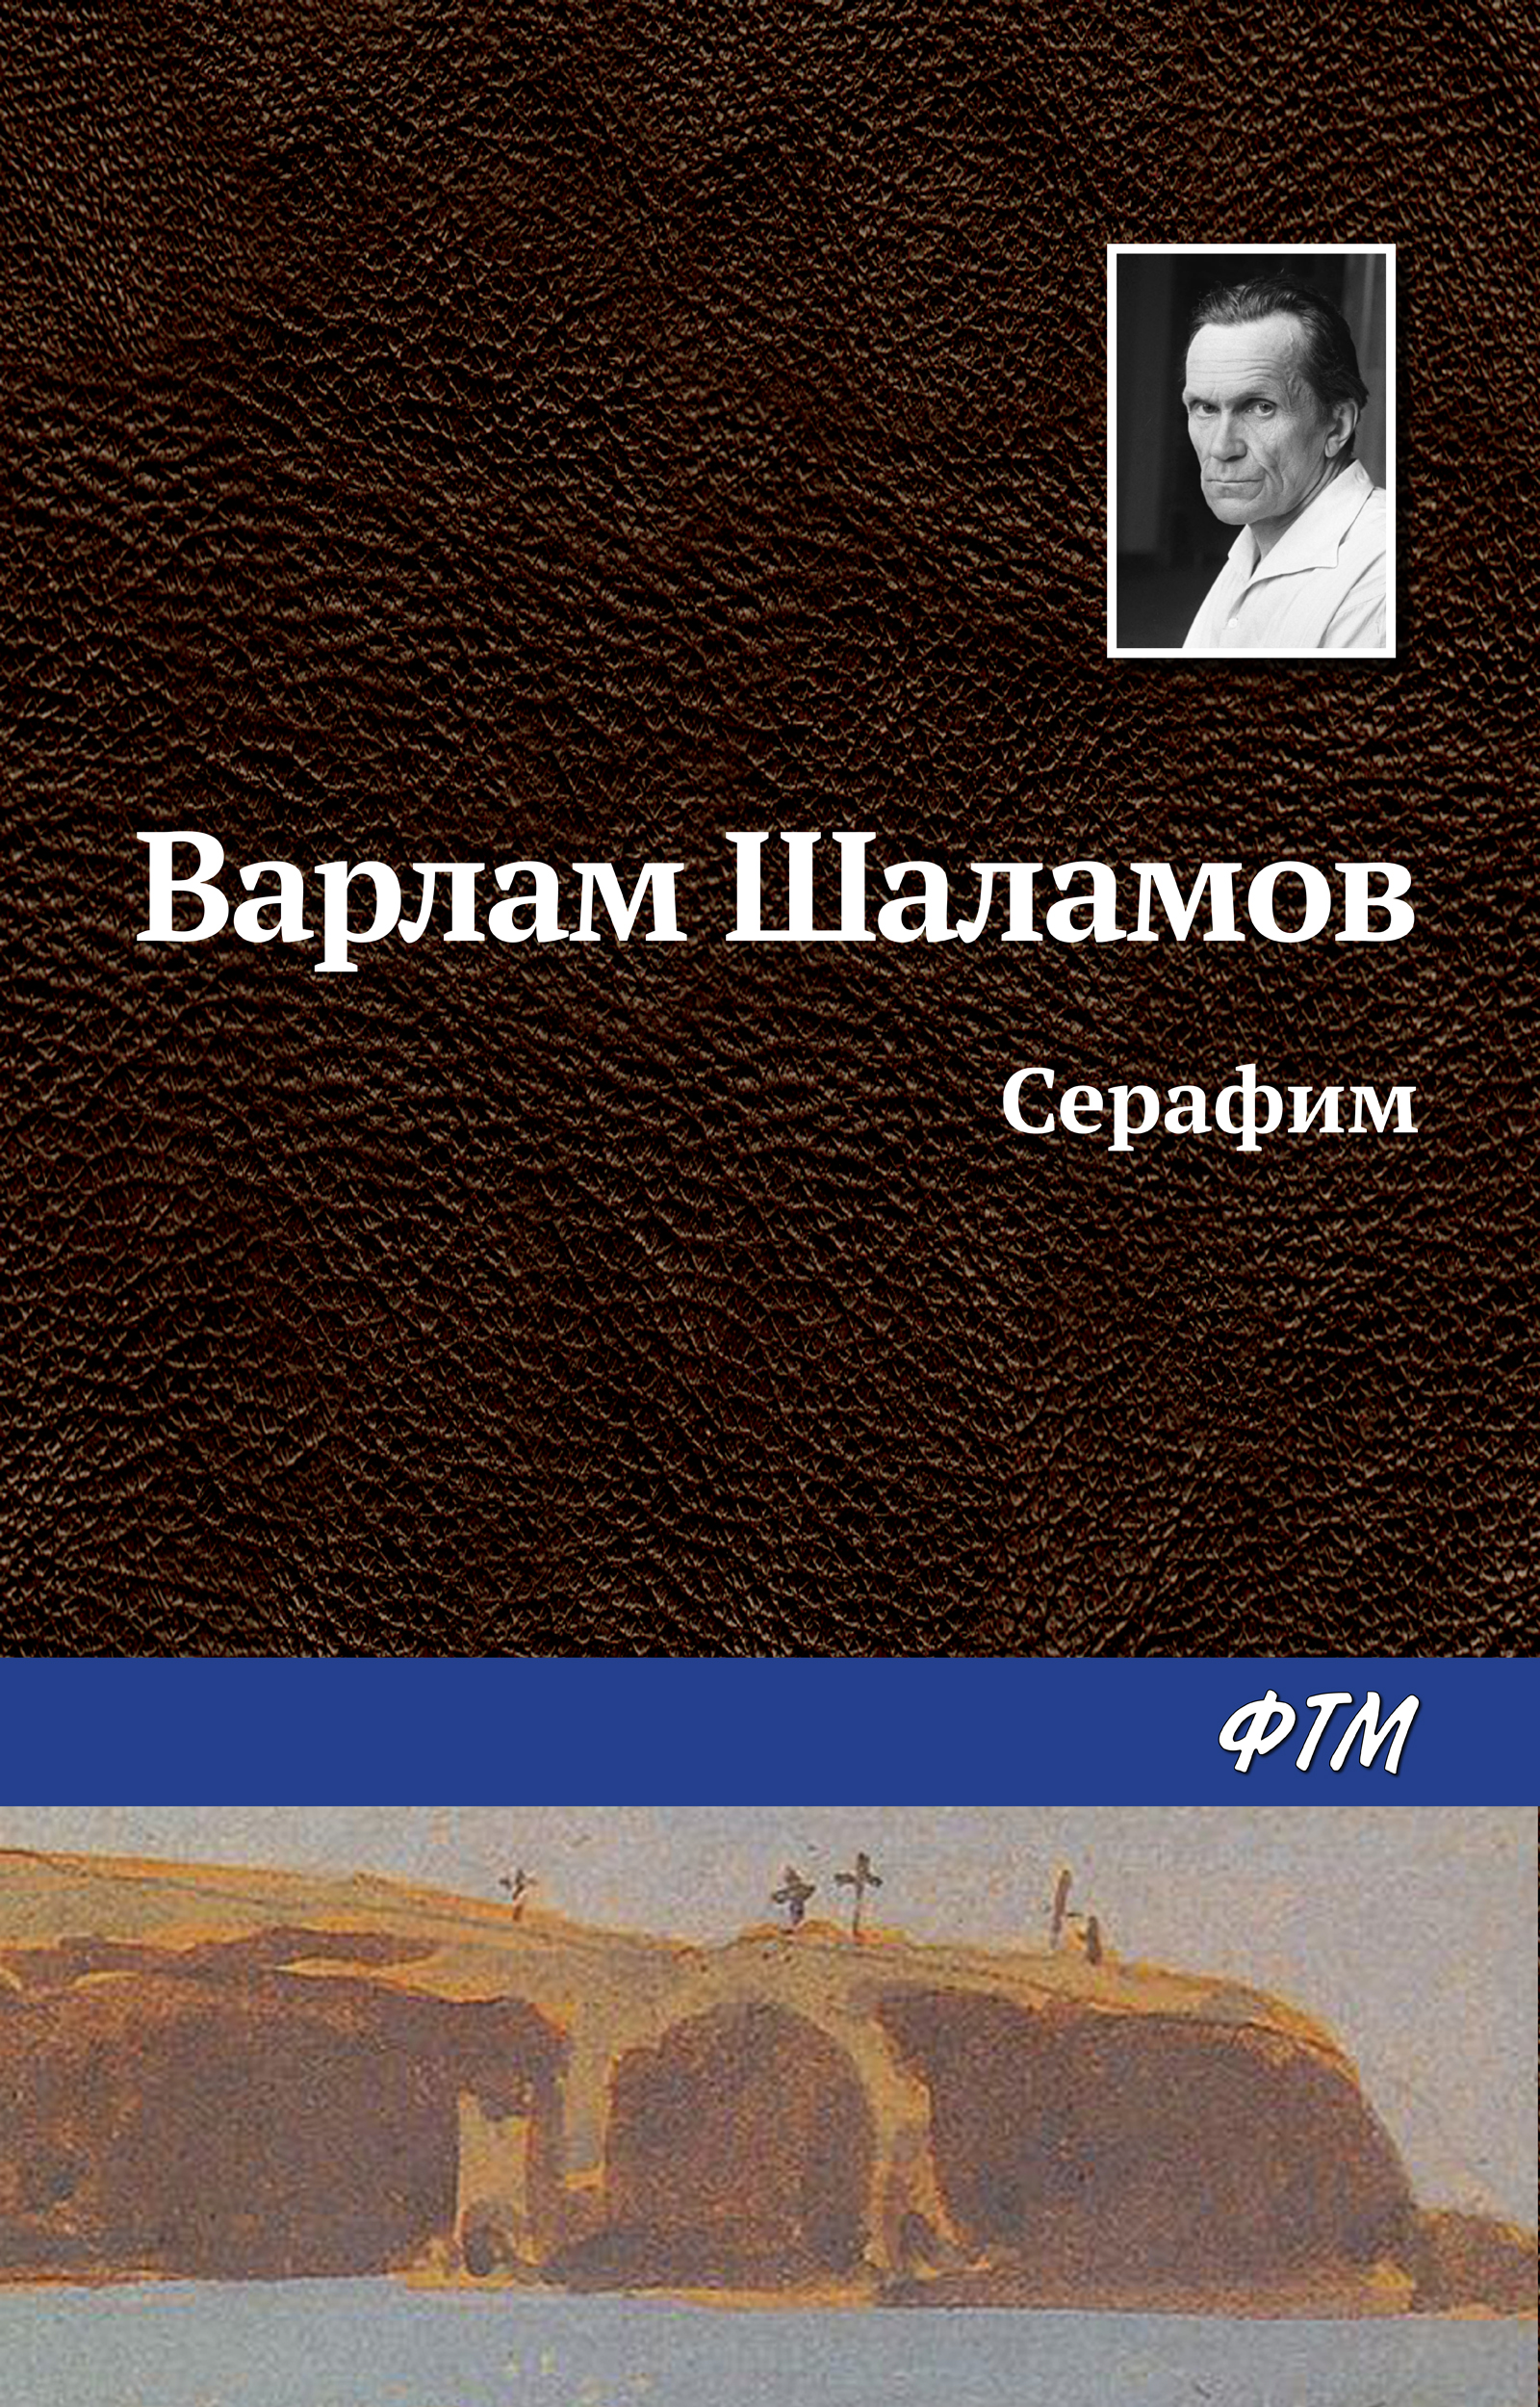 Книга Серафим из серии , созданная Варлам Шаламов, может относится к жанру Русская классика. Стоимость электронной книги Серафим с идентификатором 629935 составляет 19.00 руб.